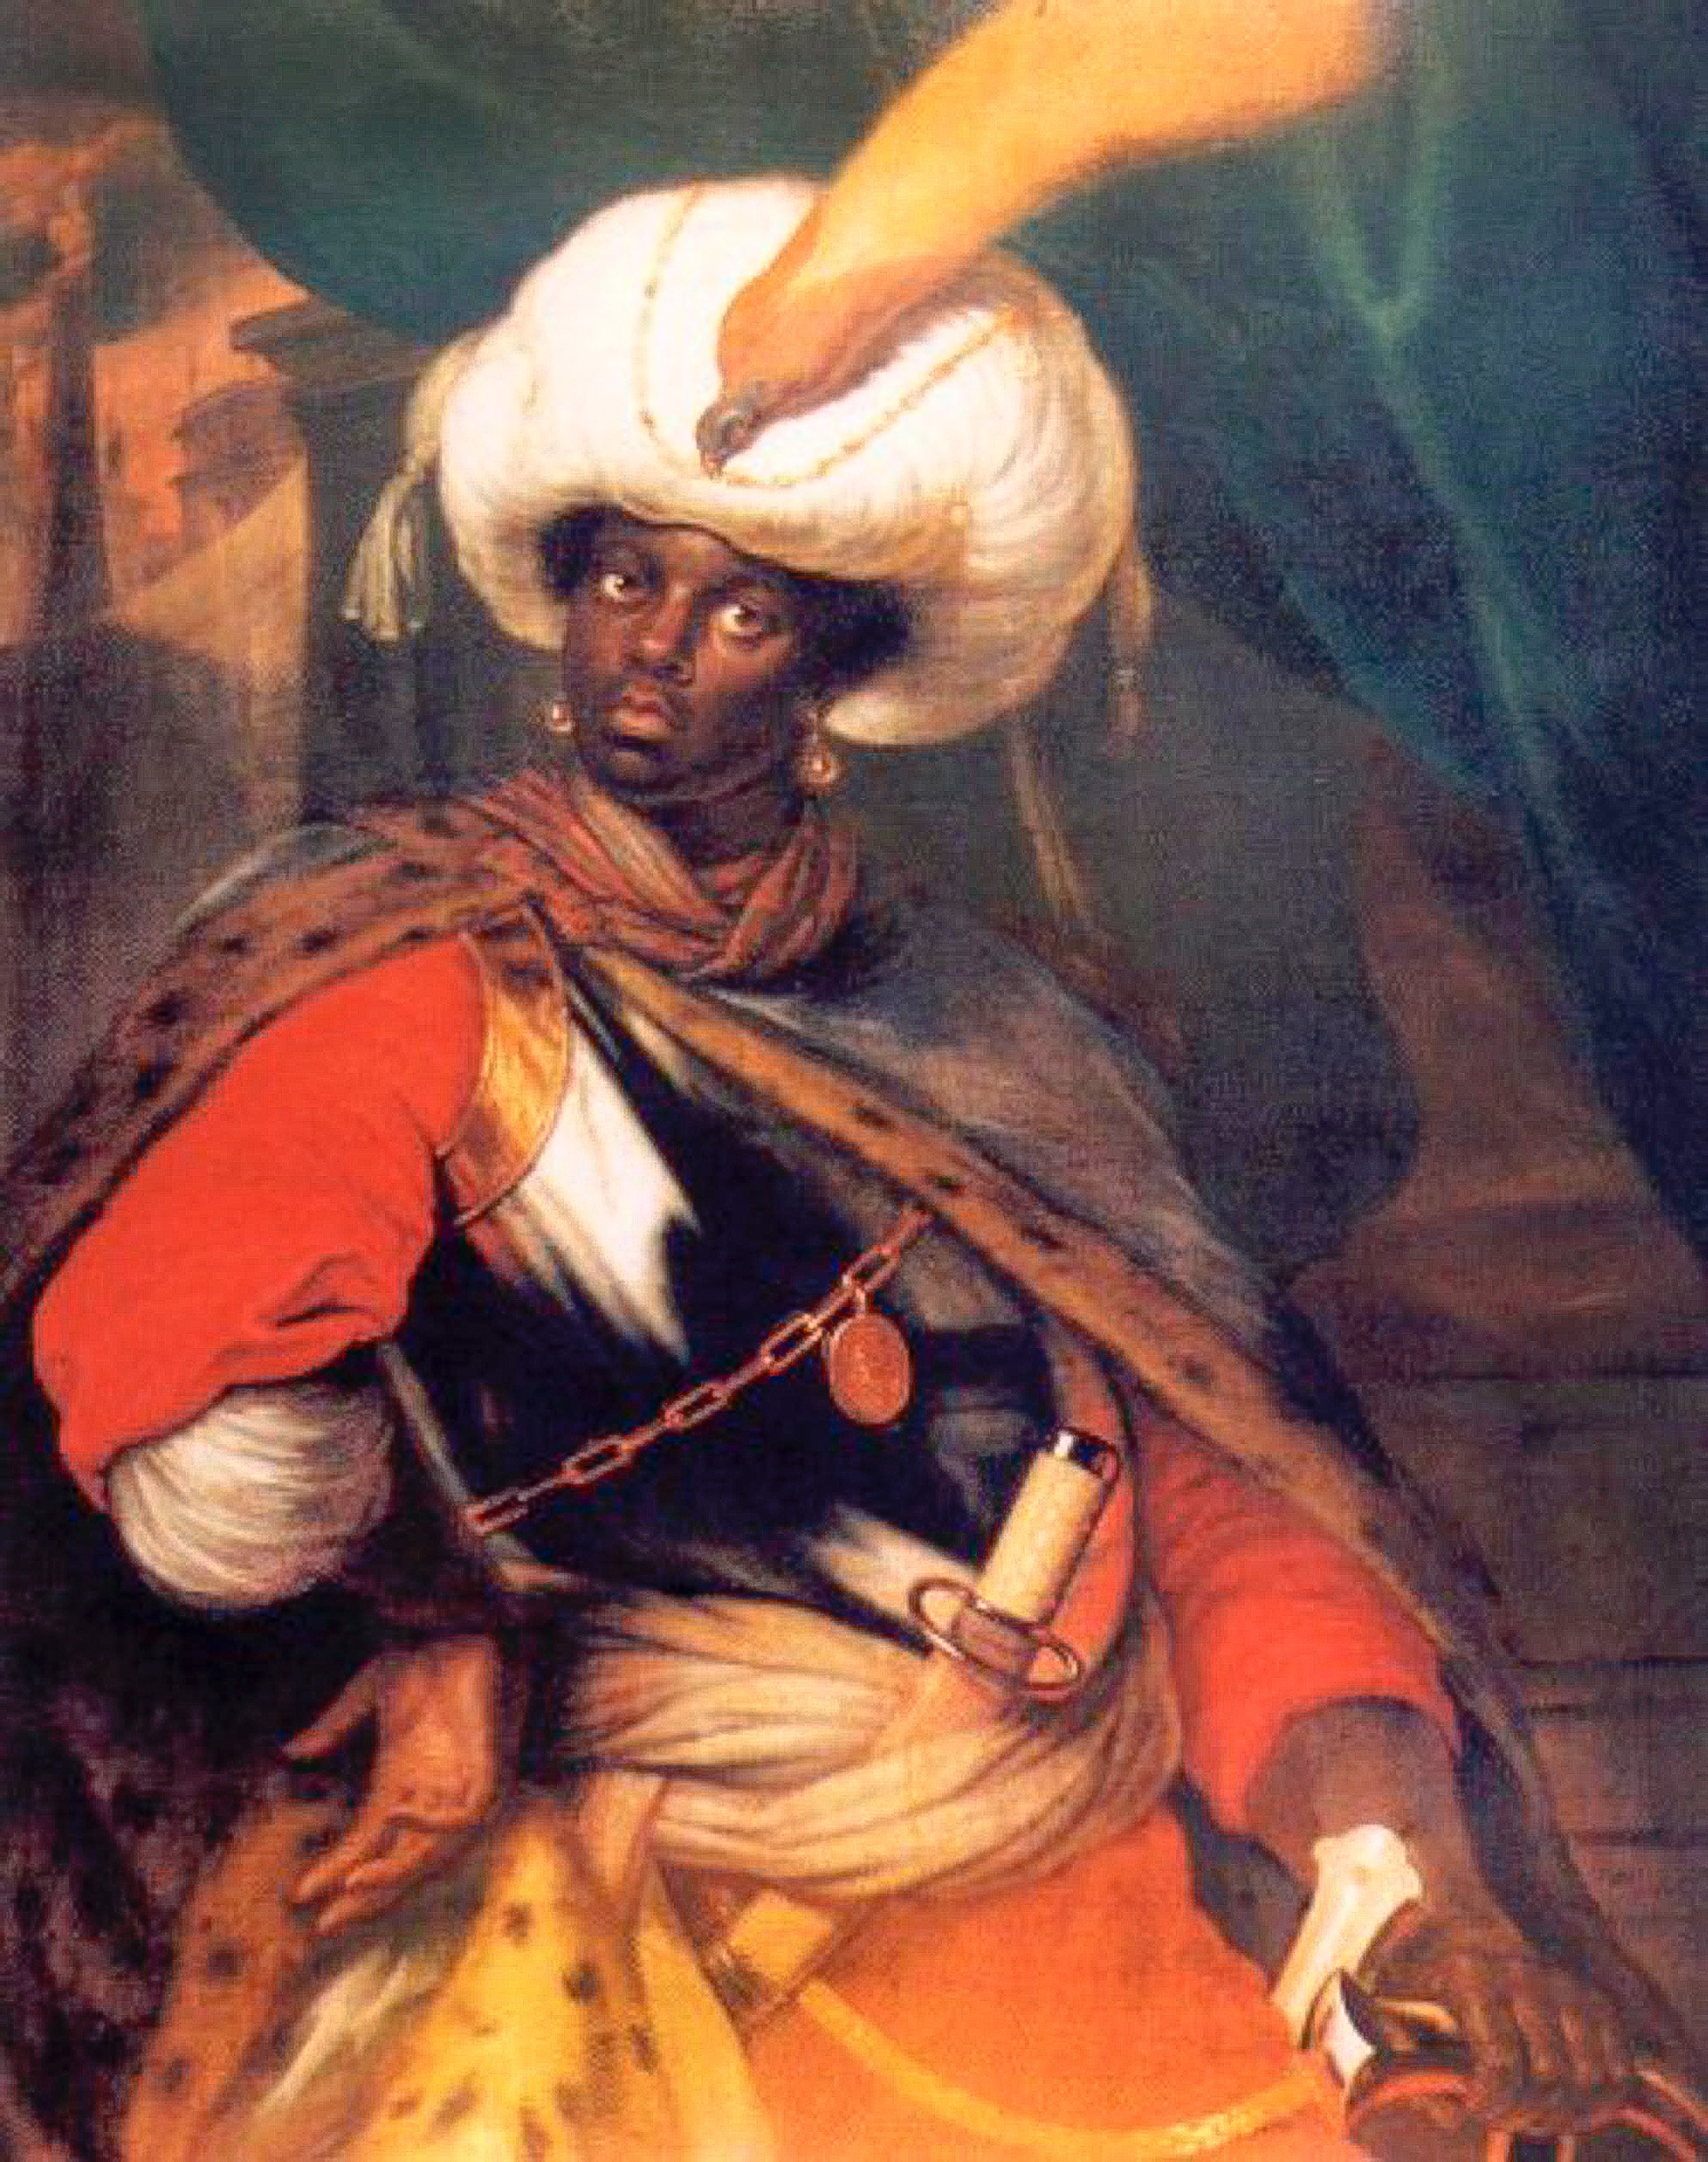 Porträt von (angeblich) dem jungen Ibrahim Hannibal